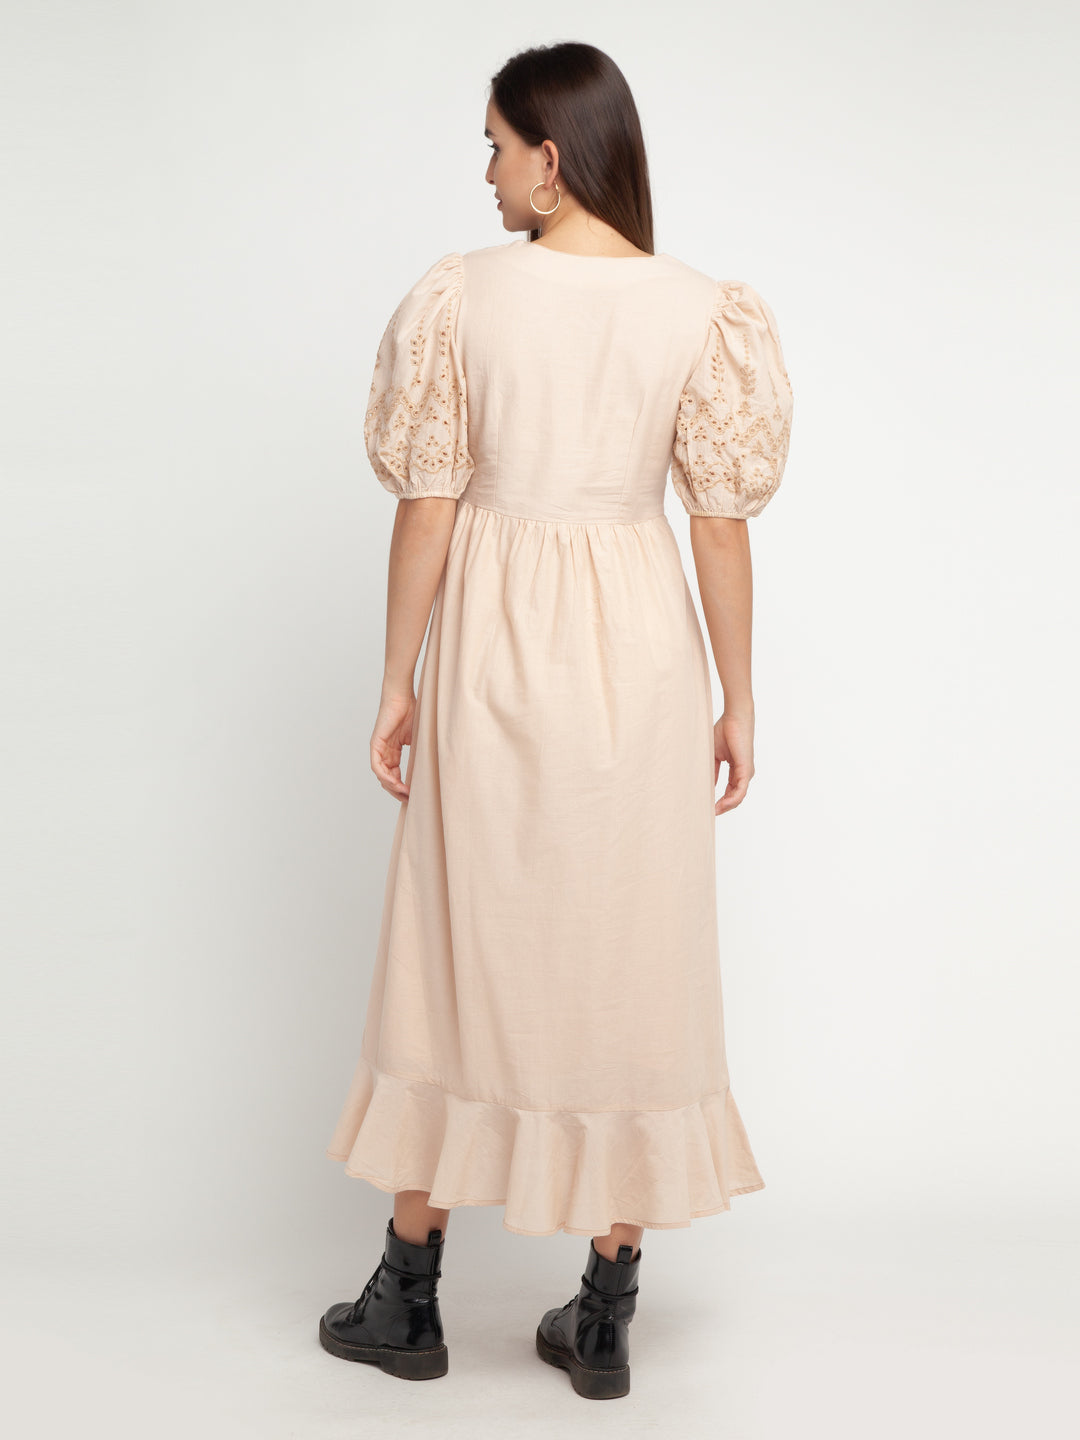 Beige Embroidered Shirt Dress Maxi Dress For Women